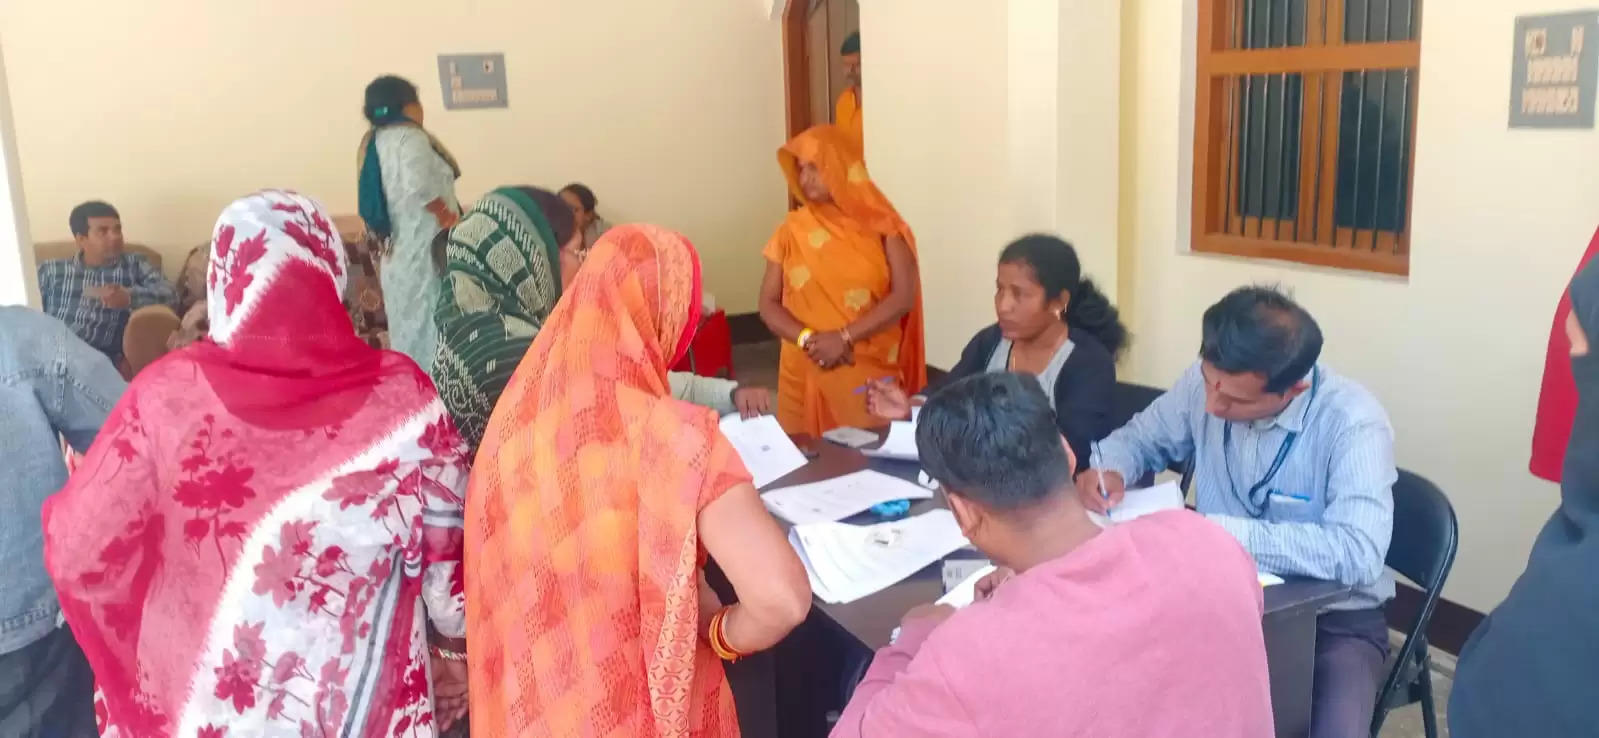 Varanasi News: होमी भाभा कैंसर अस्पताल में स्वास्थ्य शिविर का आयोजन महिलाओं का किया गया निशुल्क जांच150 महिलाएं हुई लाभान्वित